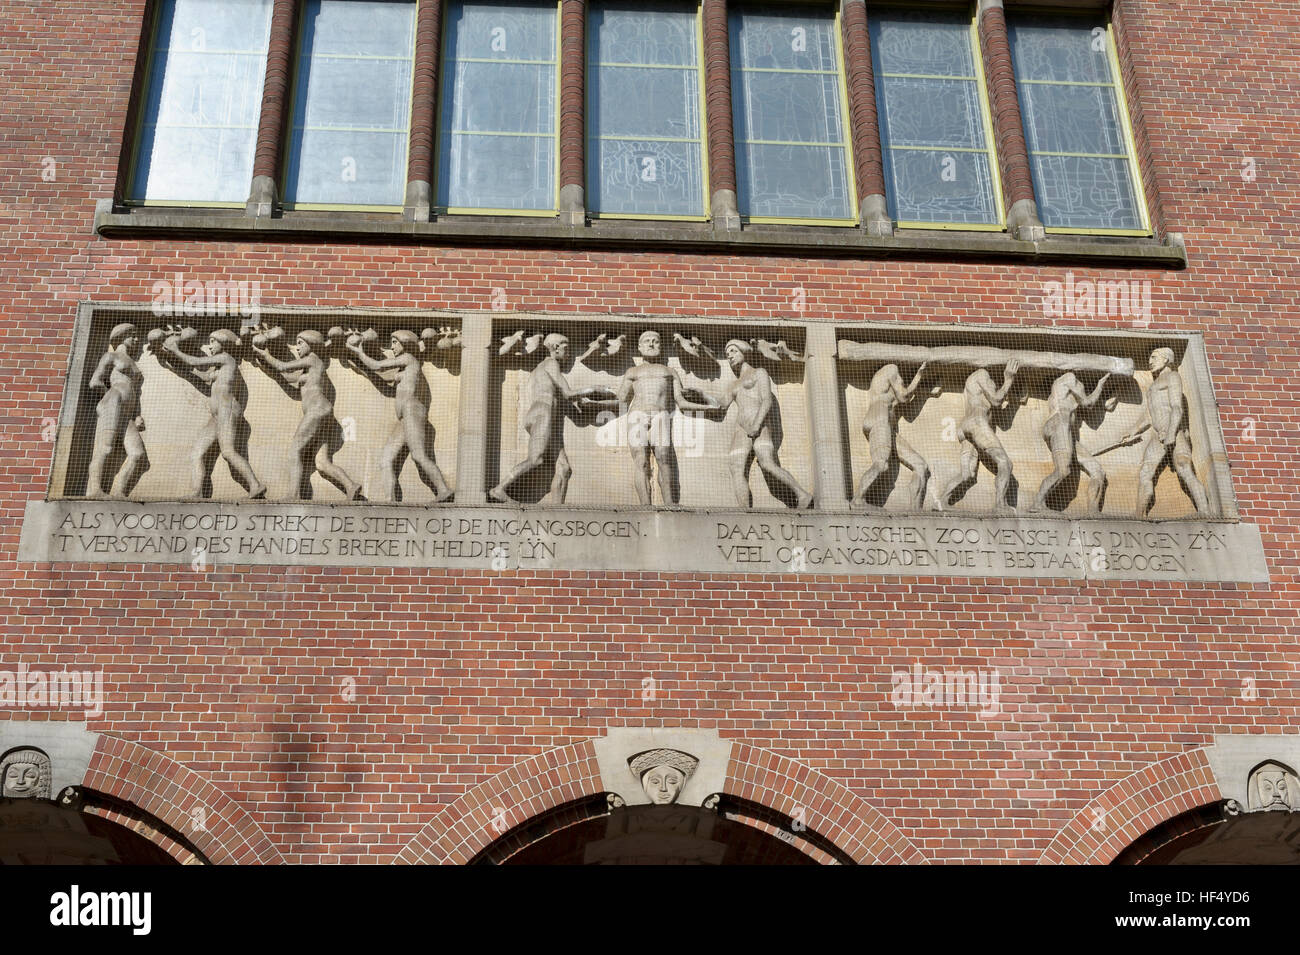 Un groupe sculptural sur le dessus de l'entrée du bâtiment de Beurs van Berlage à Amsterdam, Hollande, Pays-Bas. Banque D'Images